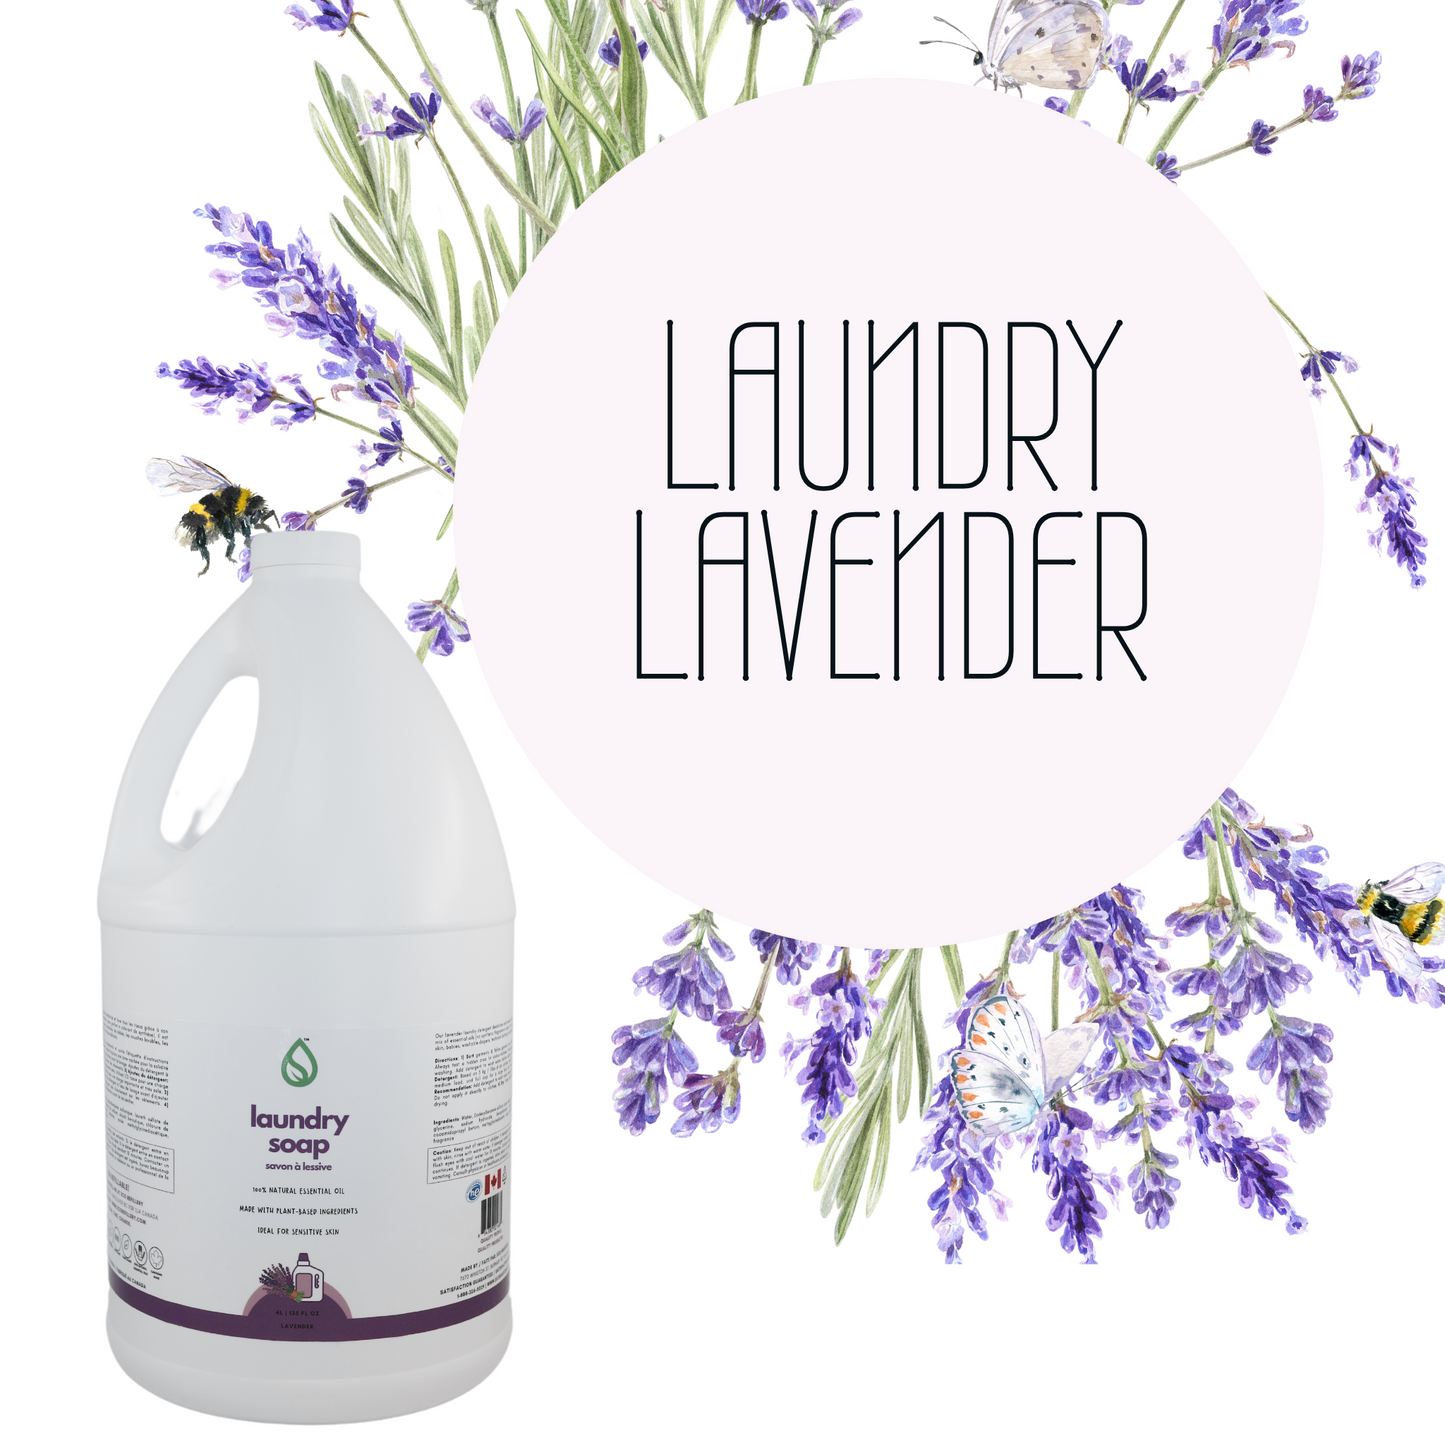 Laundry Soap - Lavender